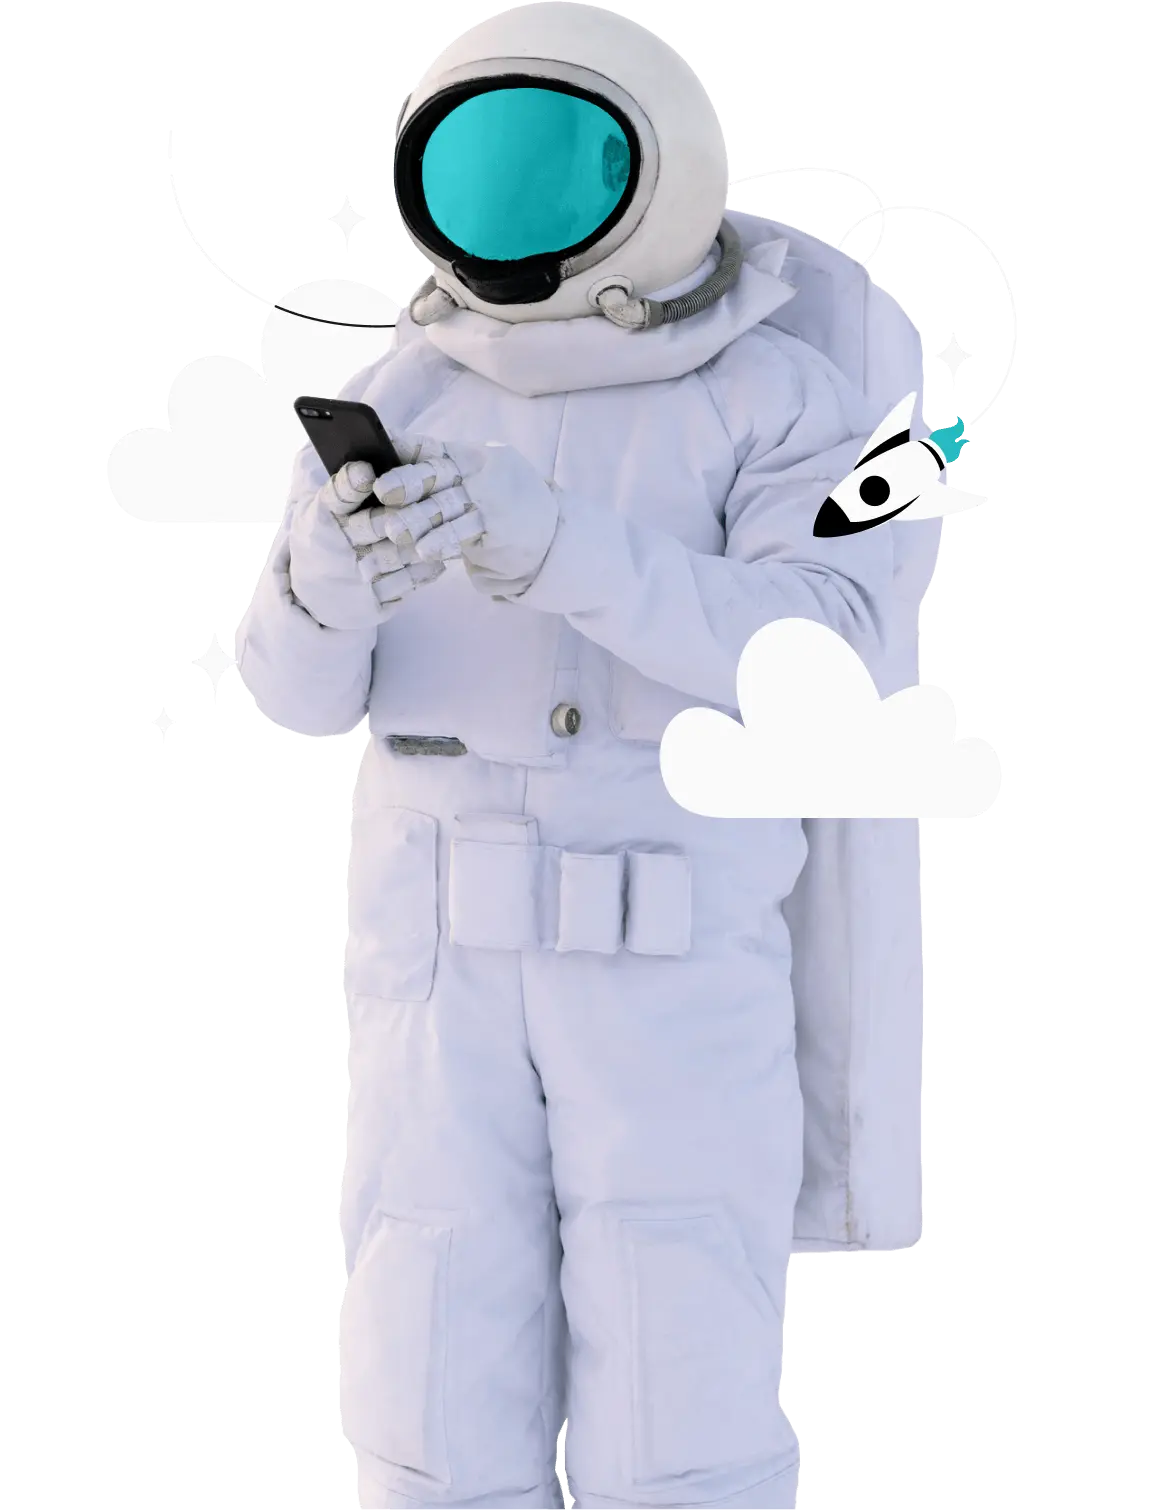 Uma pessoa com roupa de astronauta usando o celular.